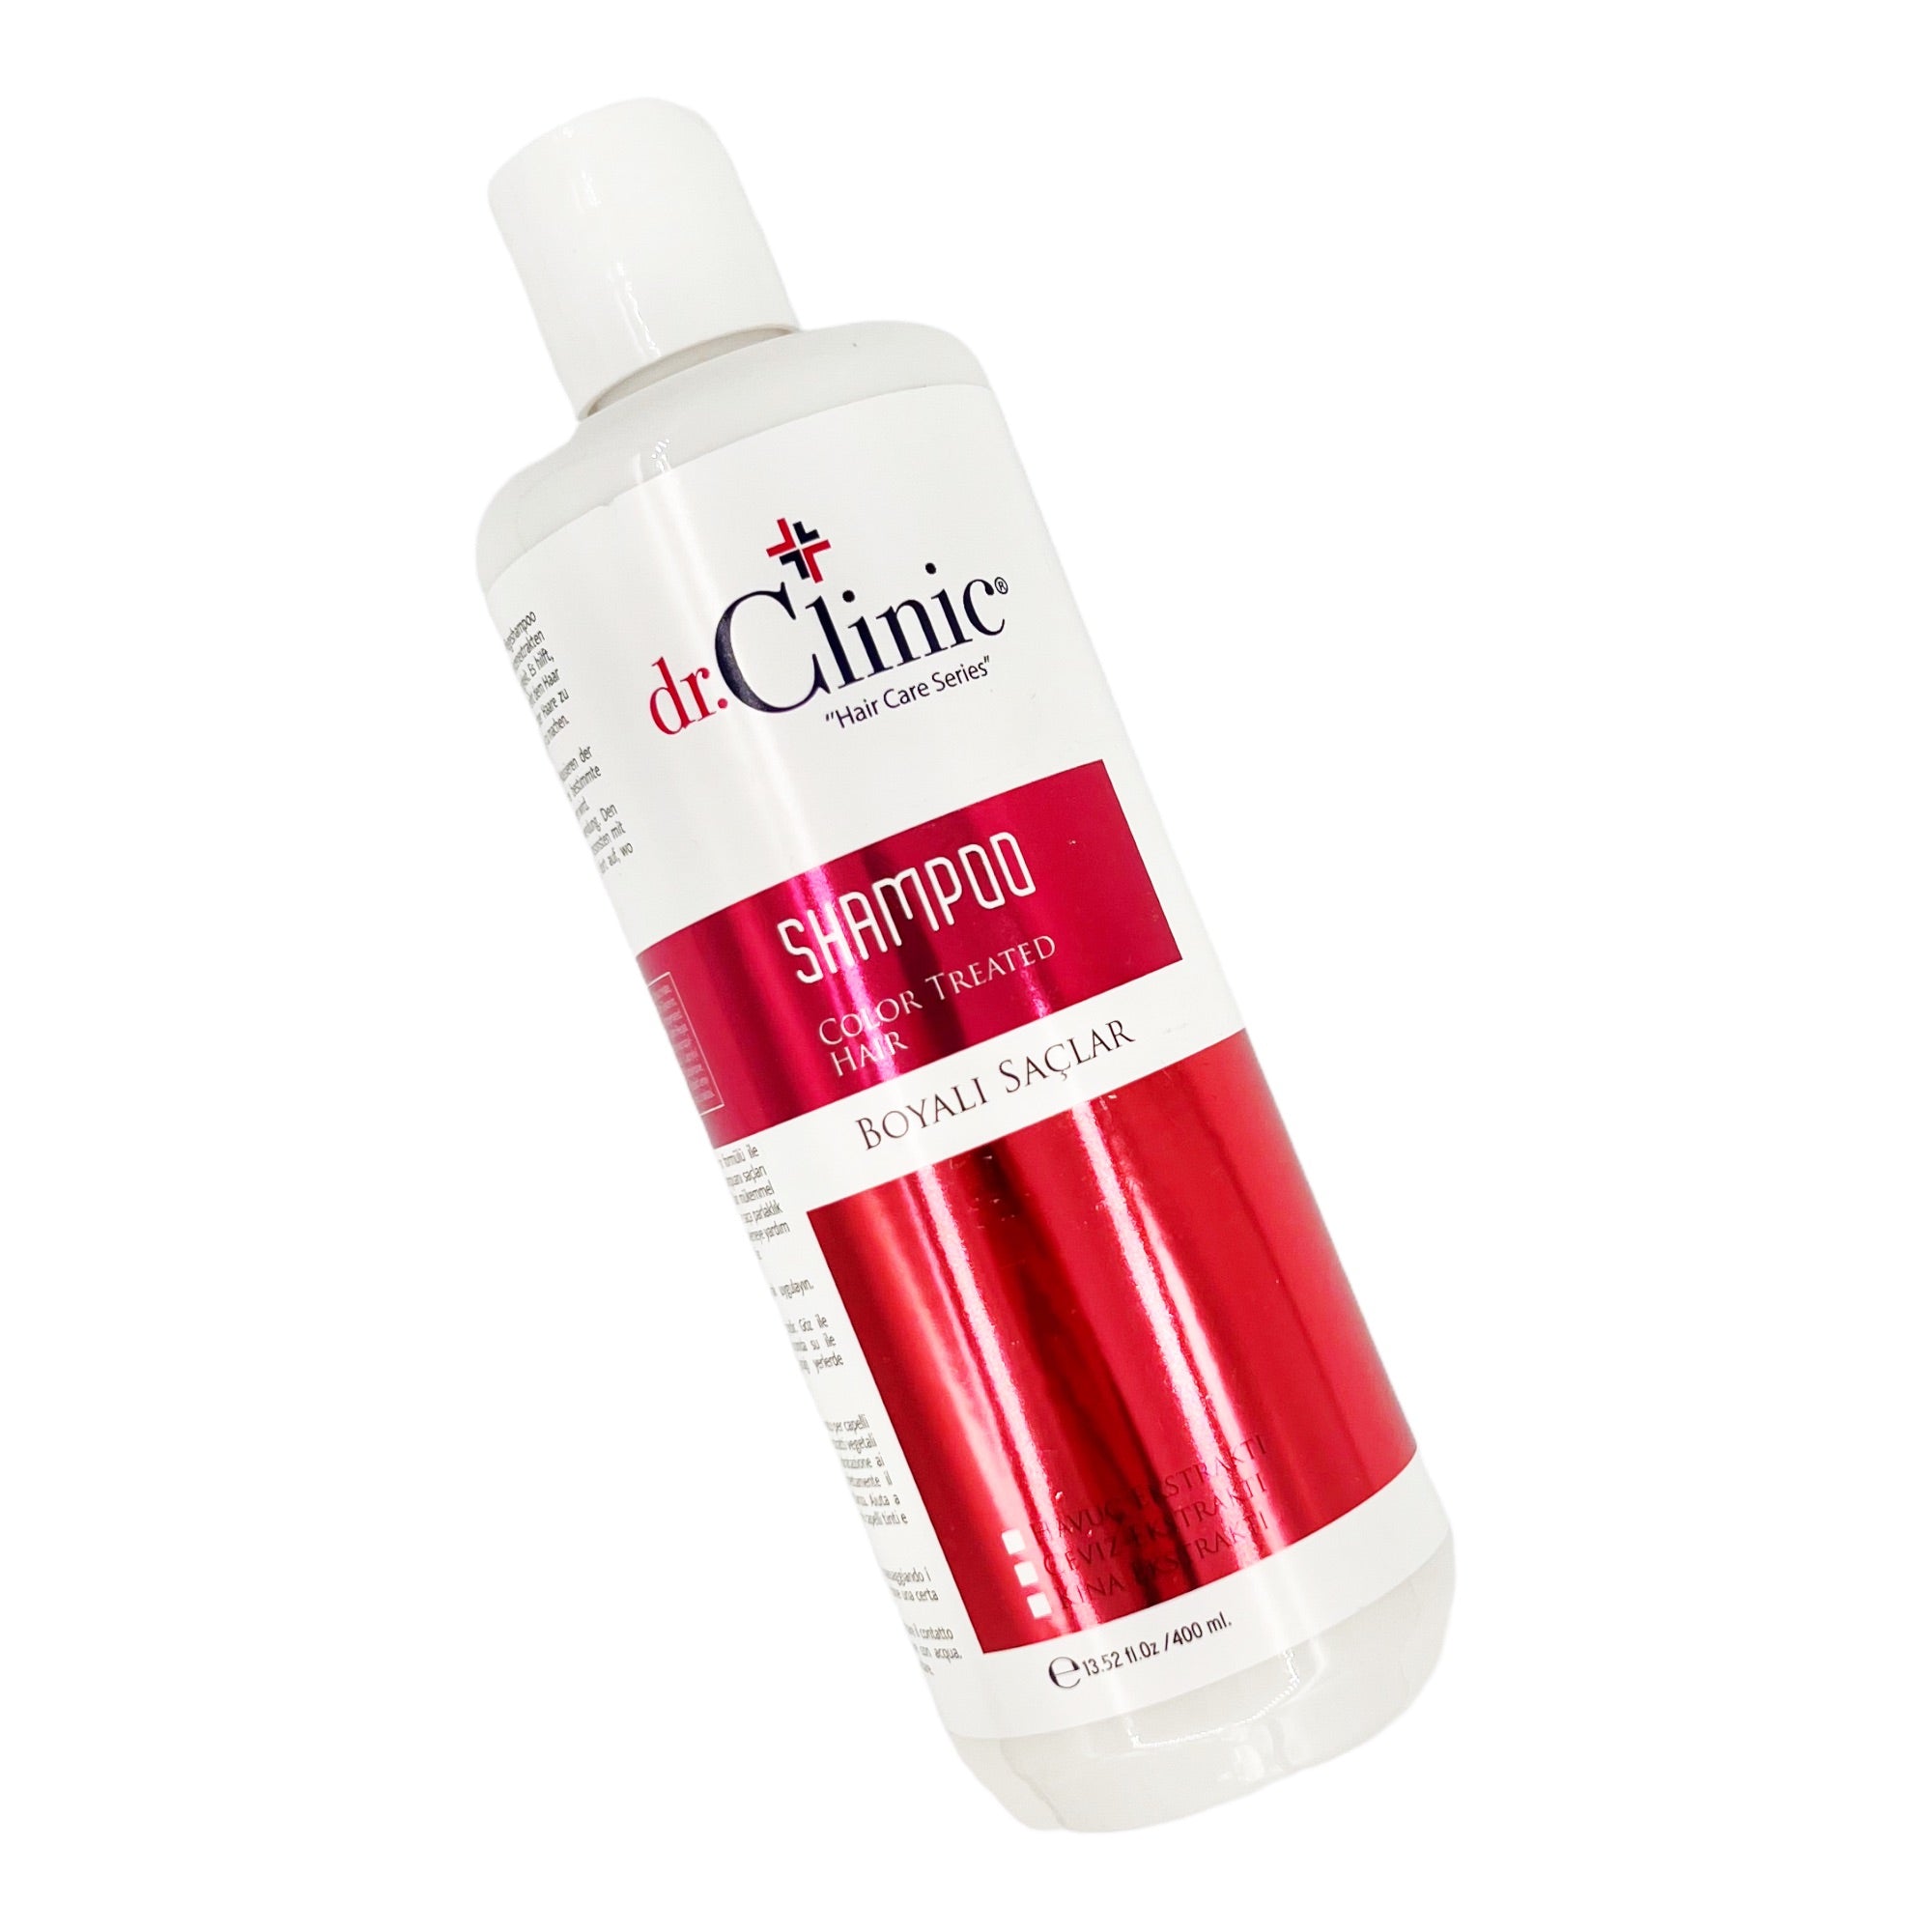 Dr.Clinic - Shampoo Color Treated Hair 400ml - Eson Direct